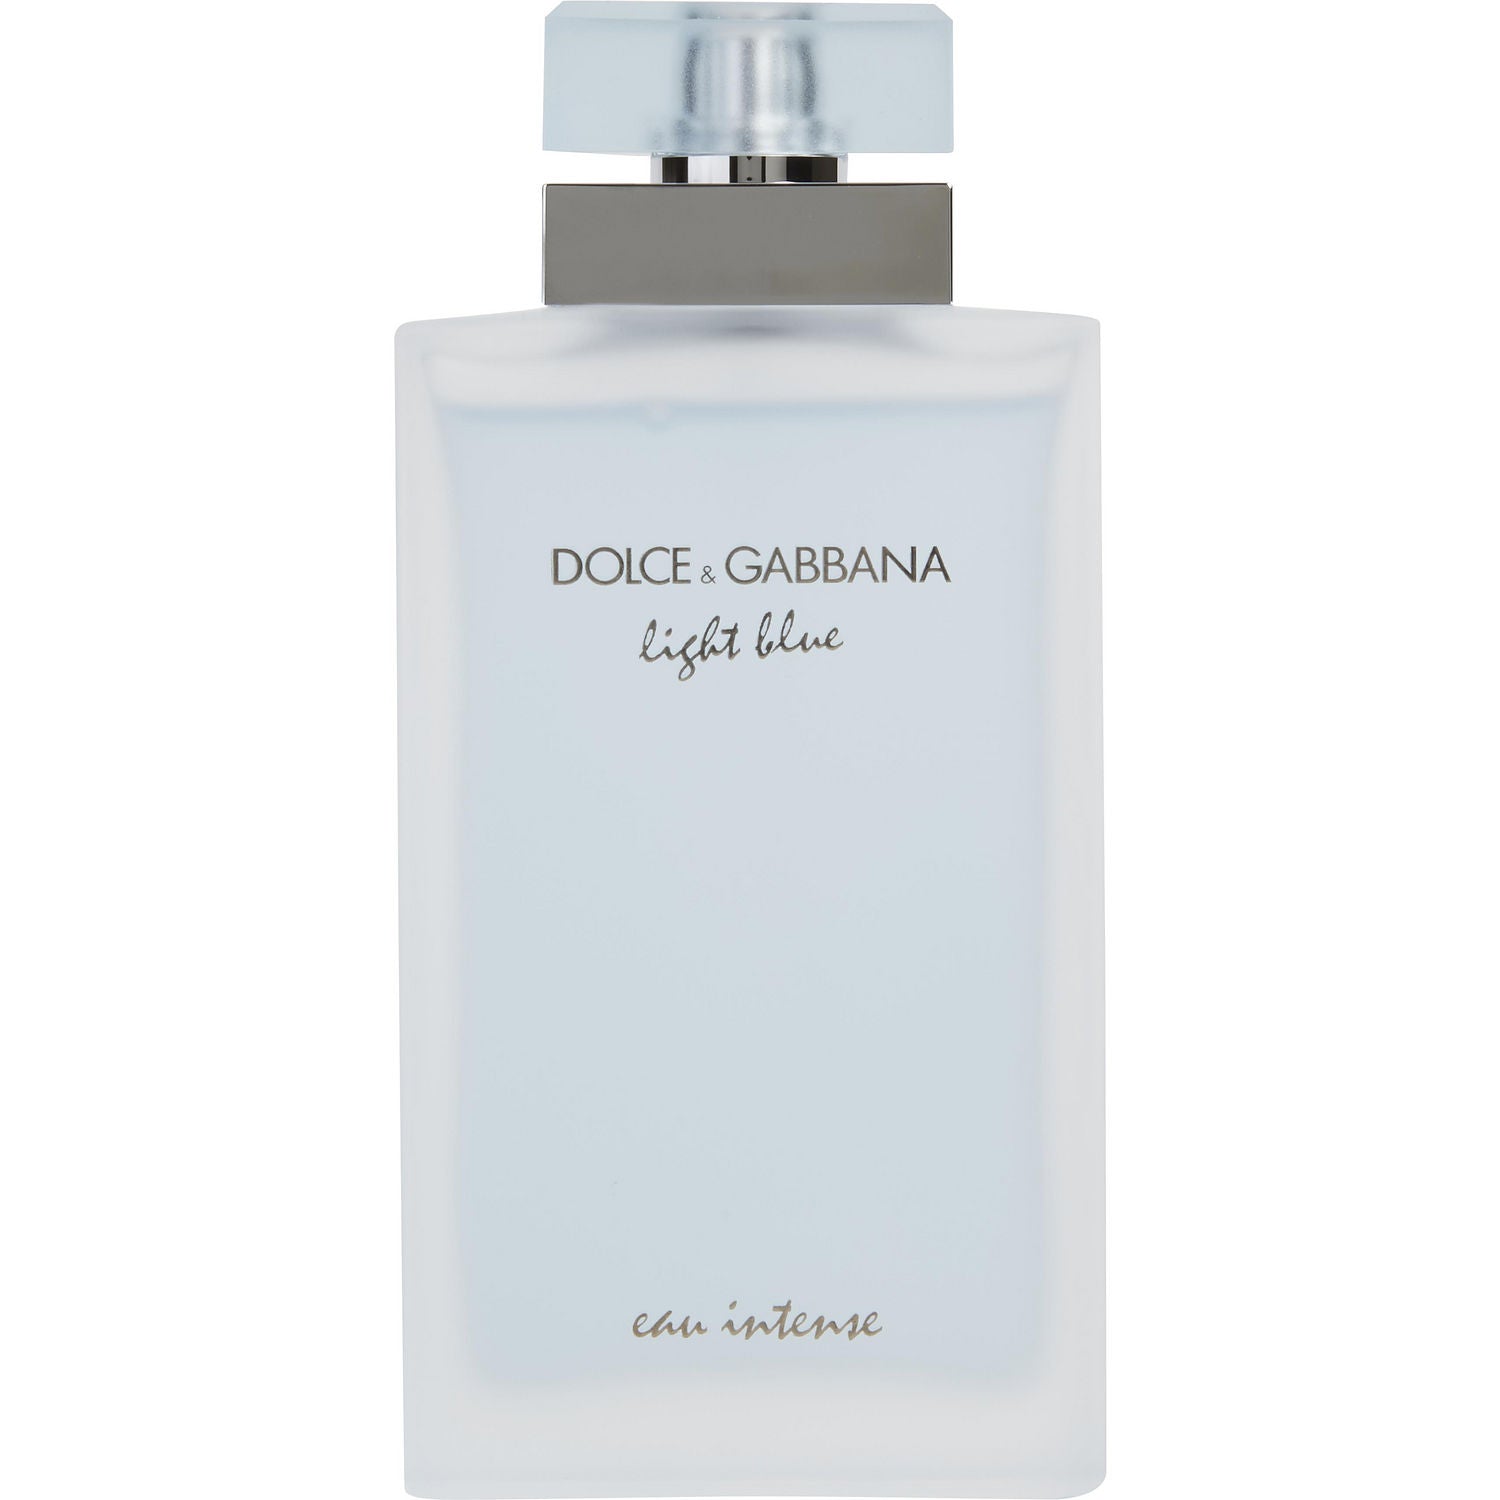 Dolce&Gabbana Light Blue Eau Intense Eau de Parfum for Women – DecantX Perfume & Cologne Decant Samples